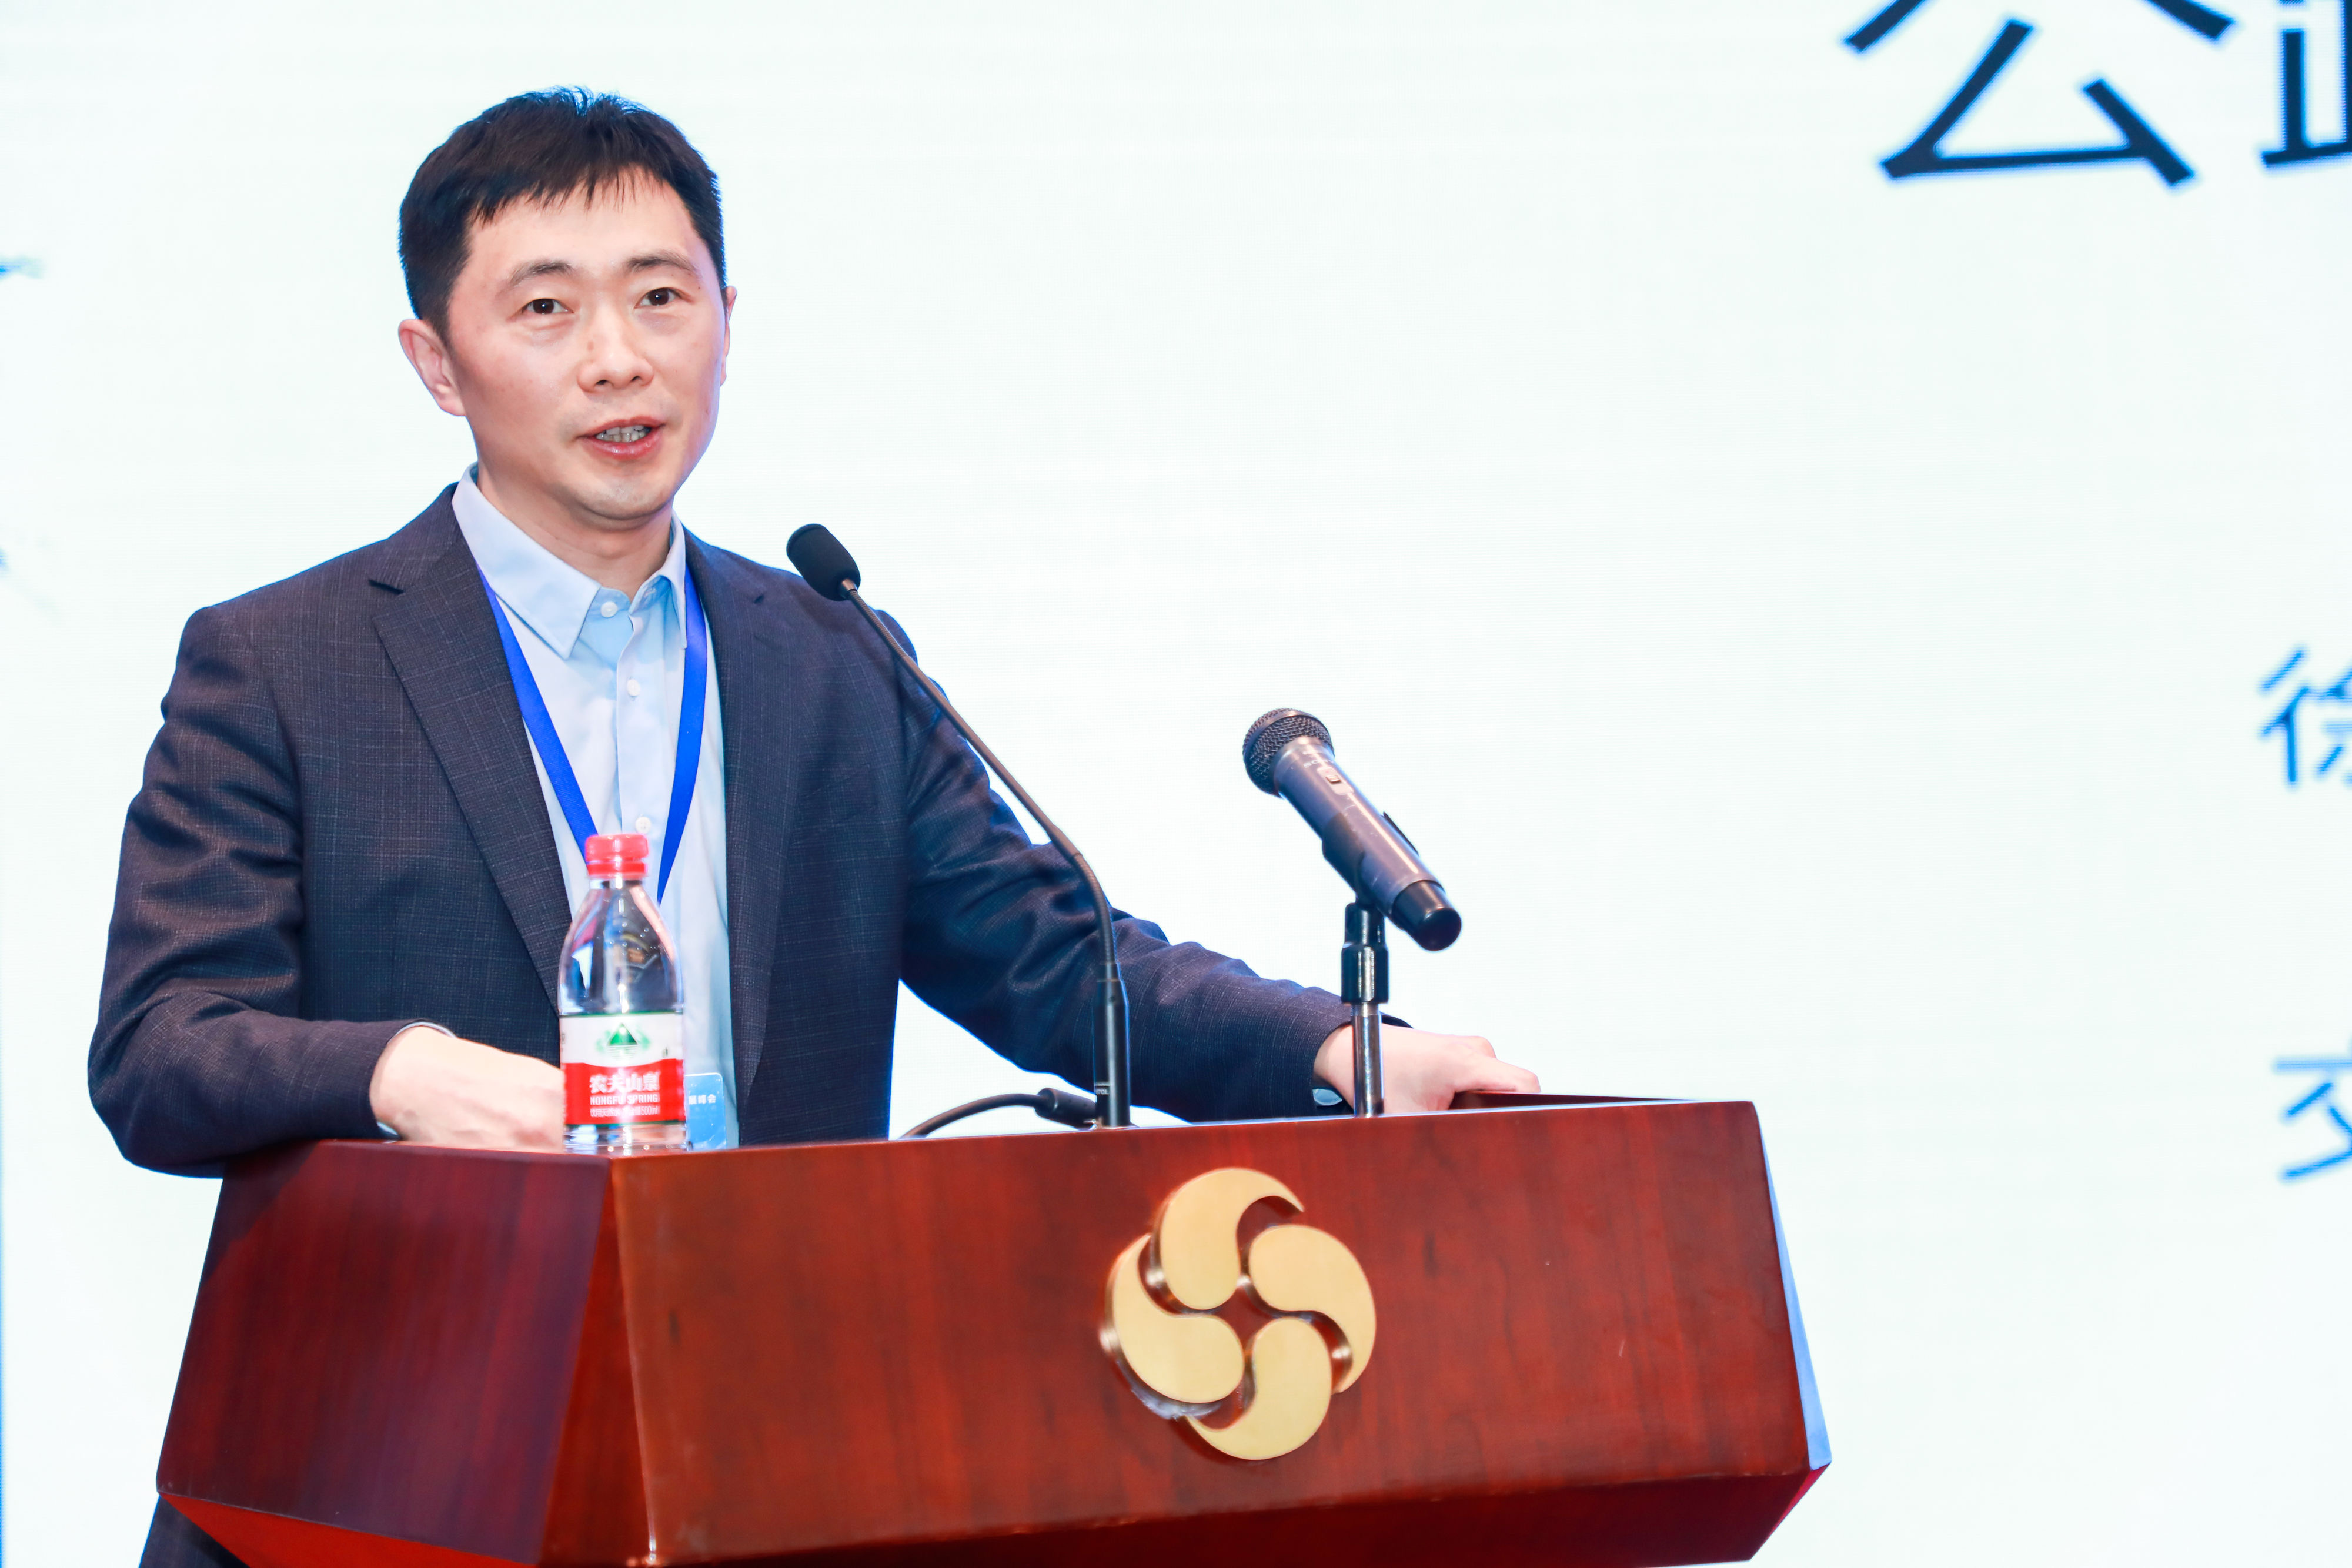 交通运输部公路科学院道路研究中心主任徐剑在第二届中国交通科技发展峰会上主旨演讲